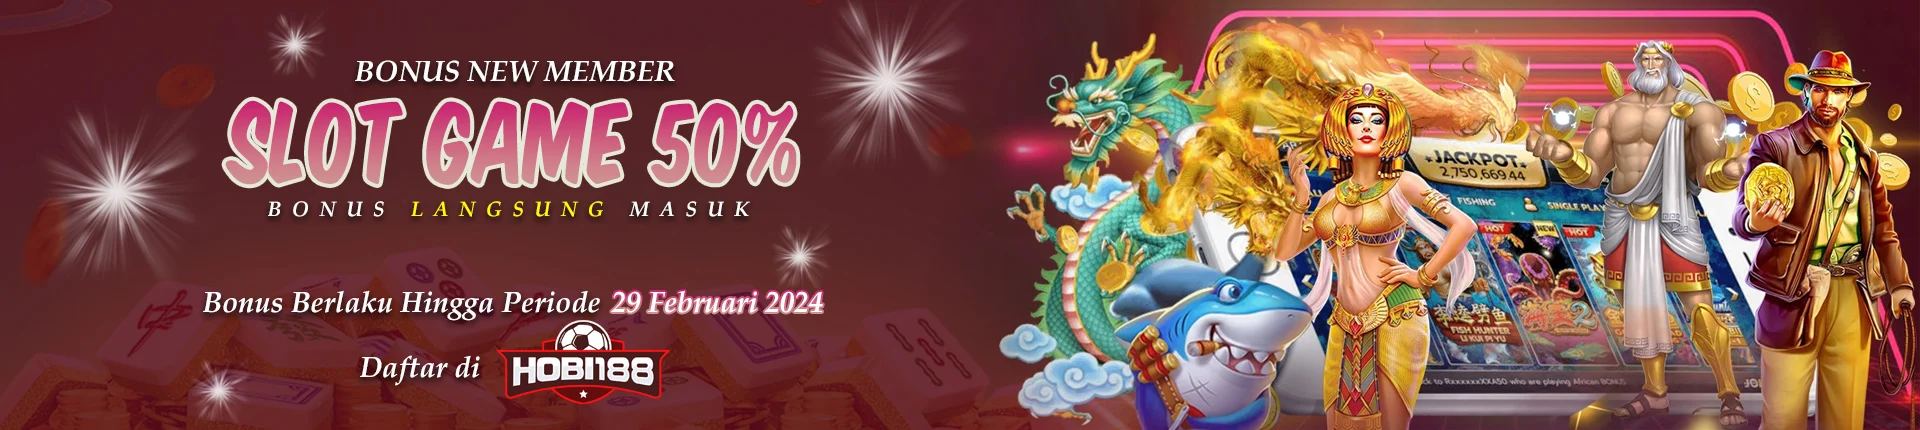 HOBI188 | Situs Slot Gacor Online 188 Buat Lu yang Hobi Jackpot